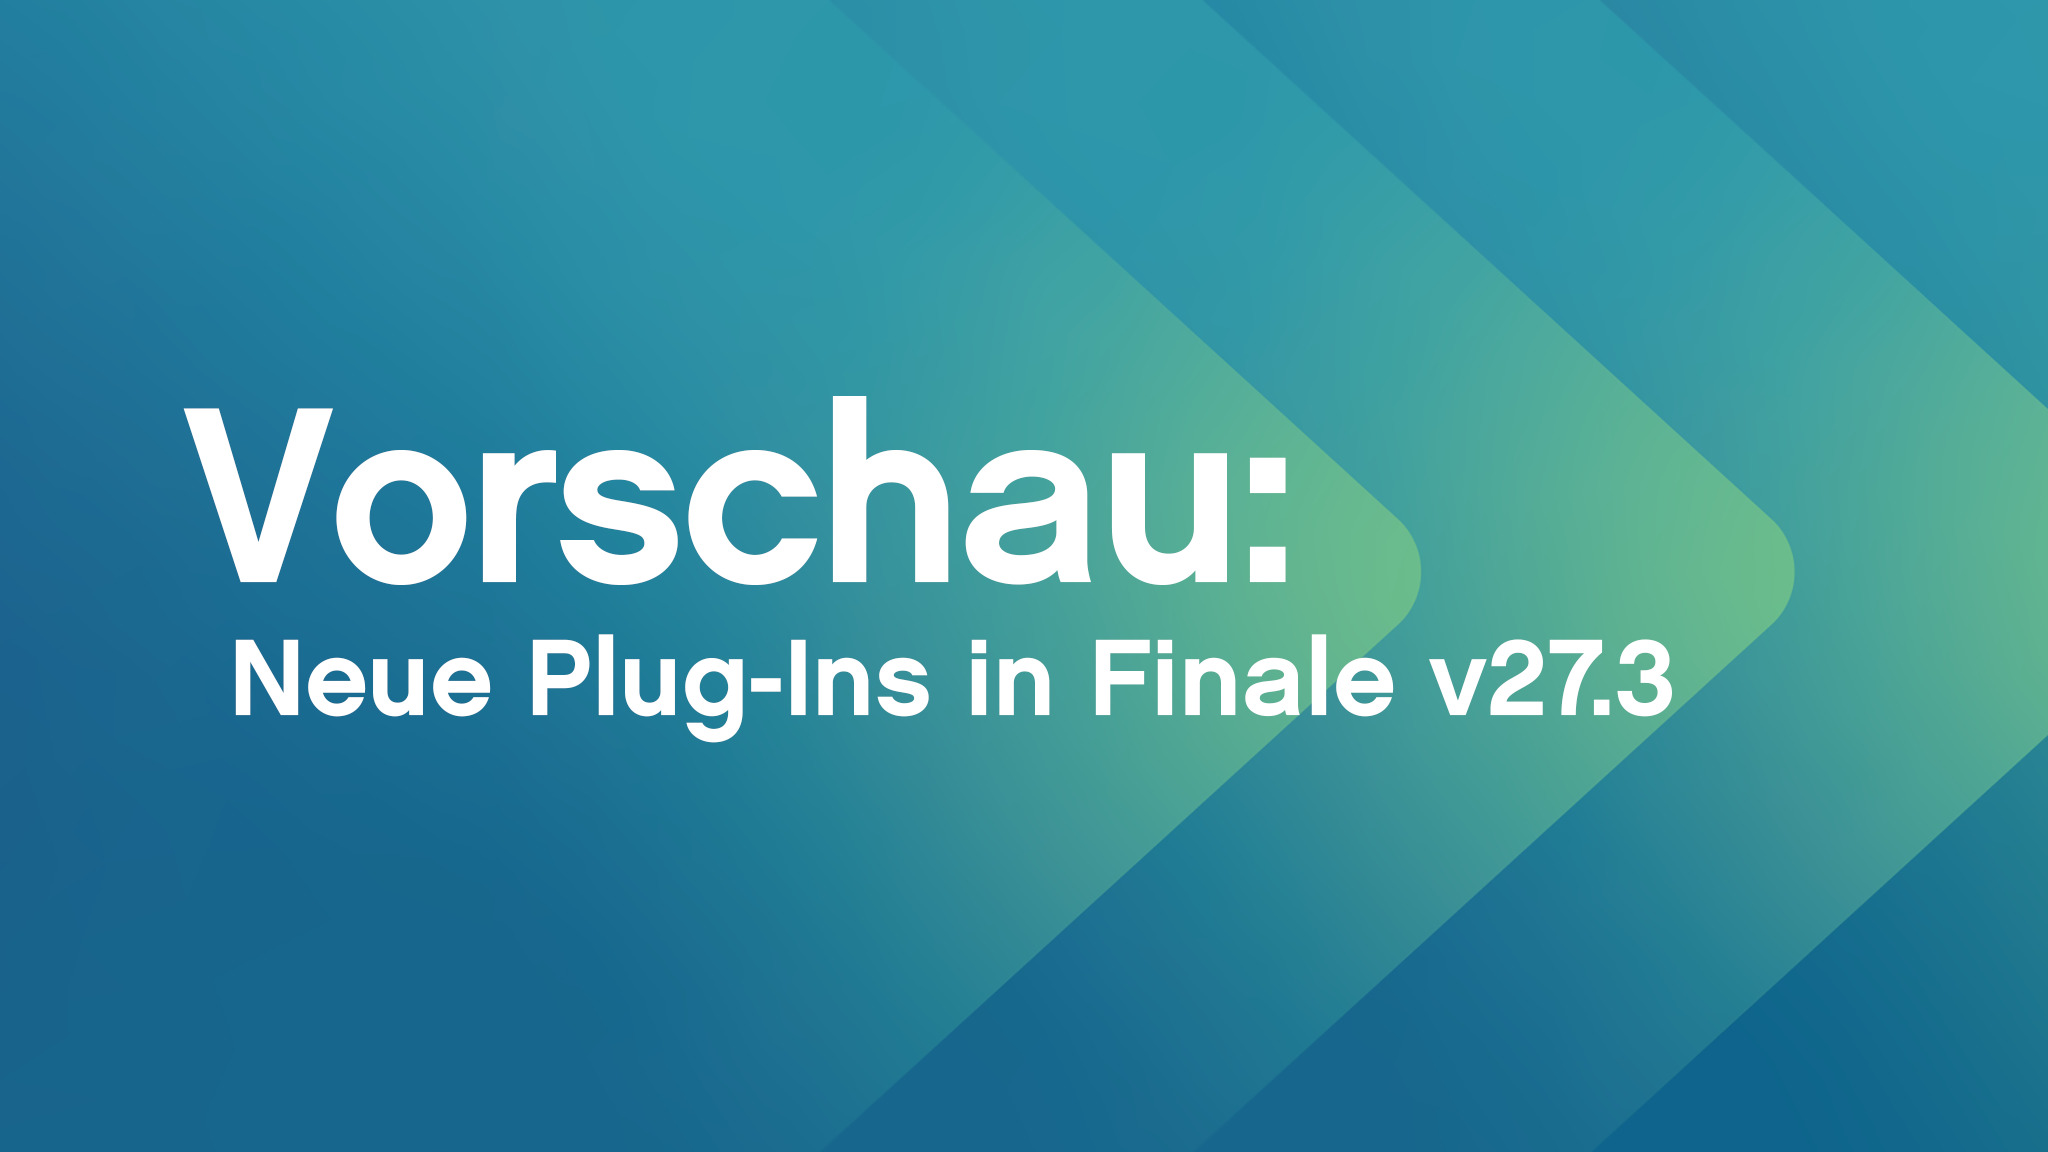 Vorschau: neue Plug-Ins in Finale v27.3